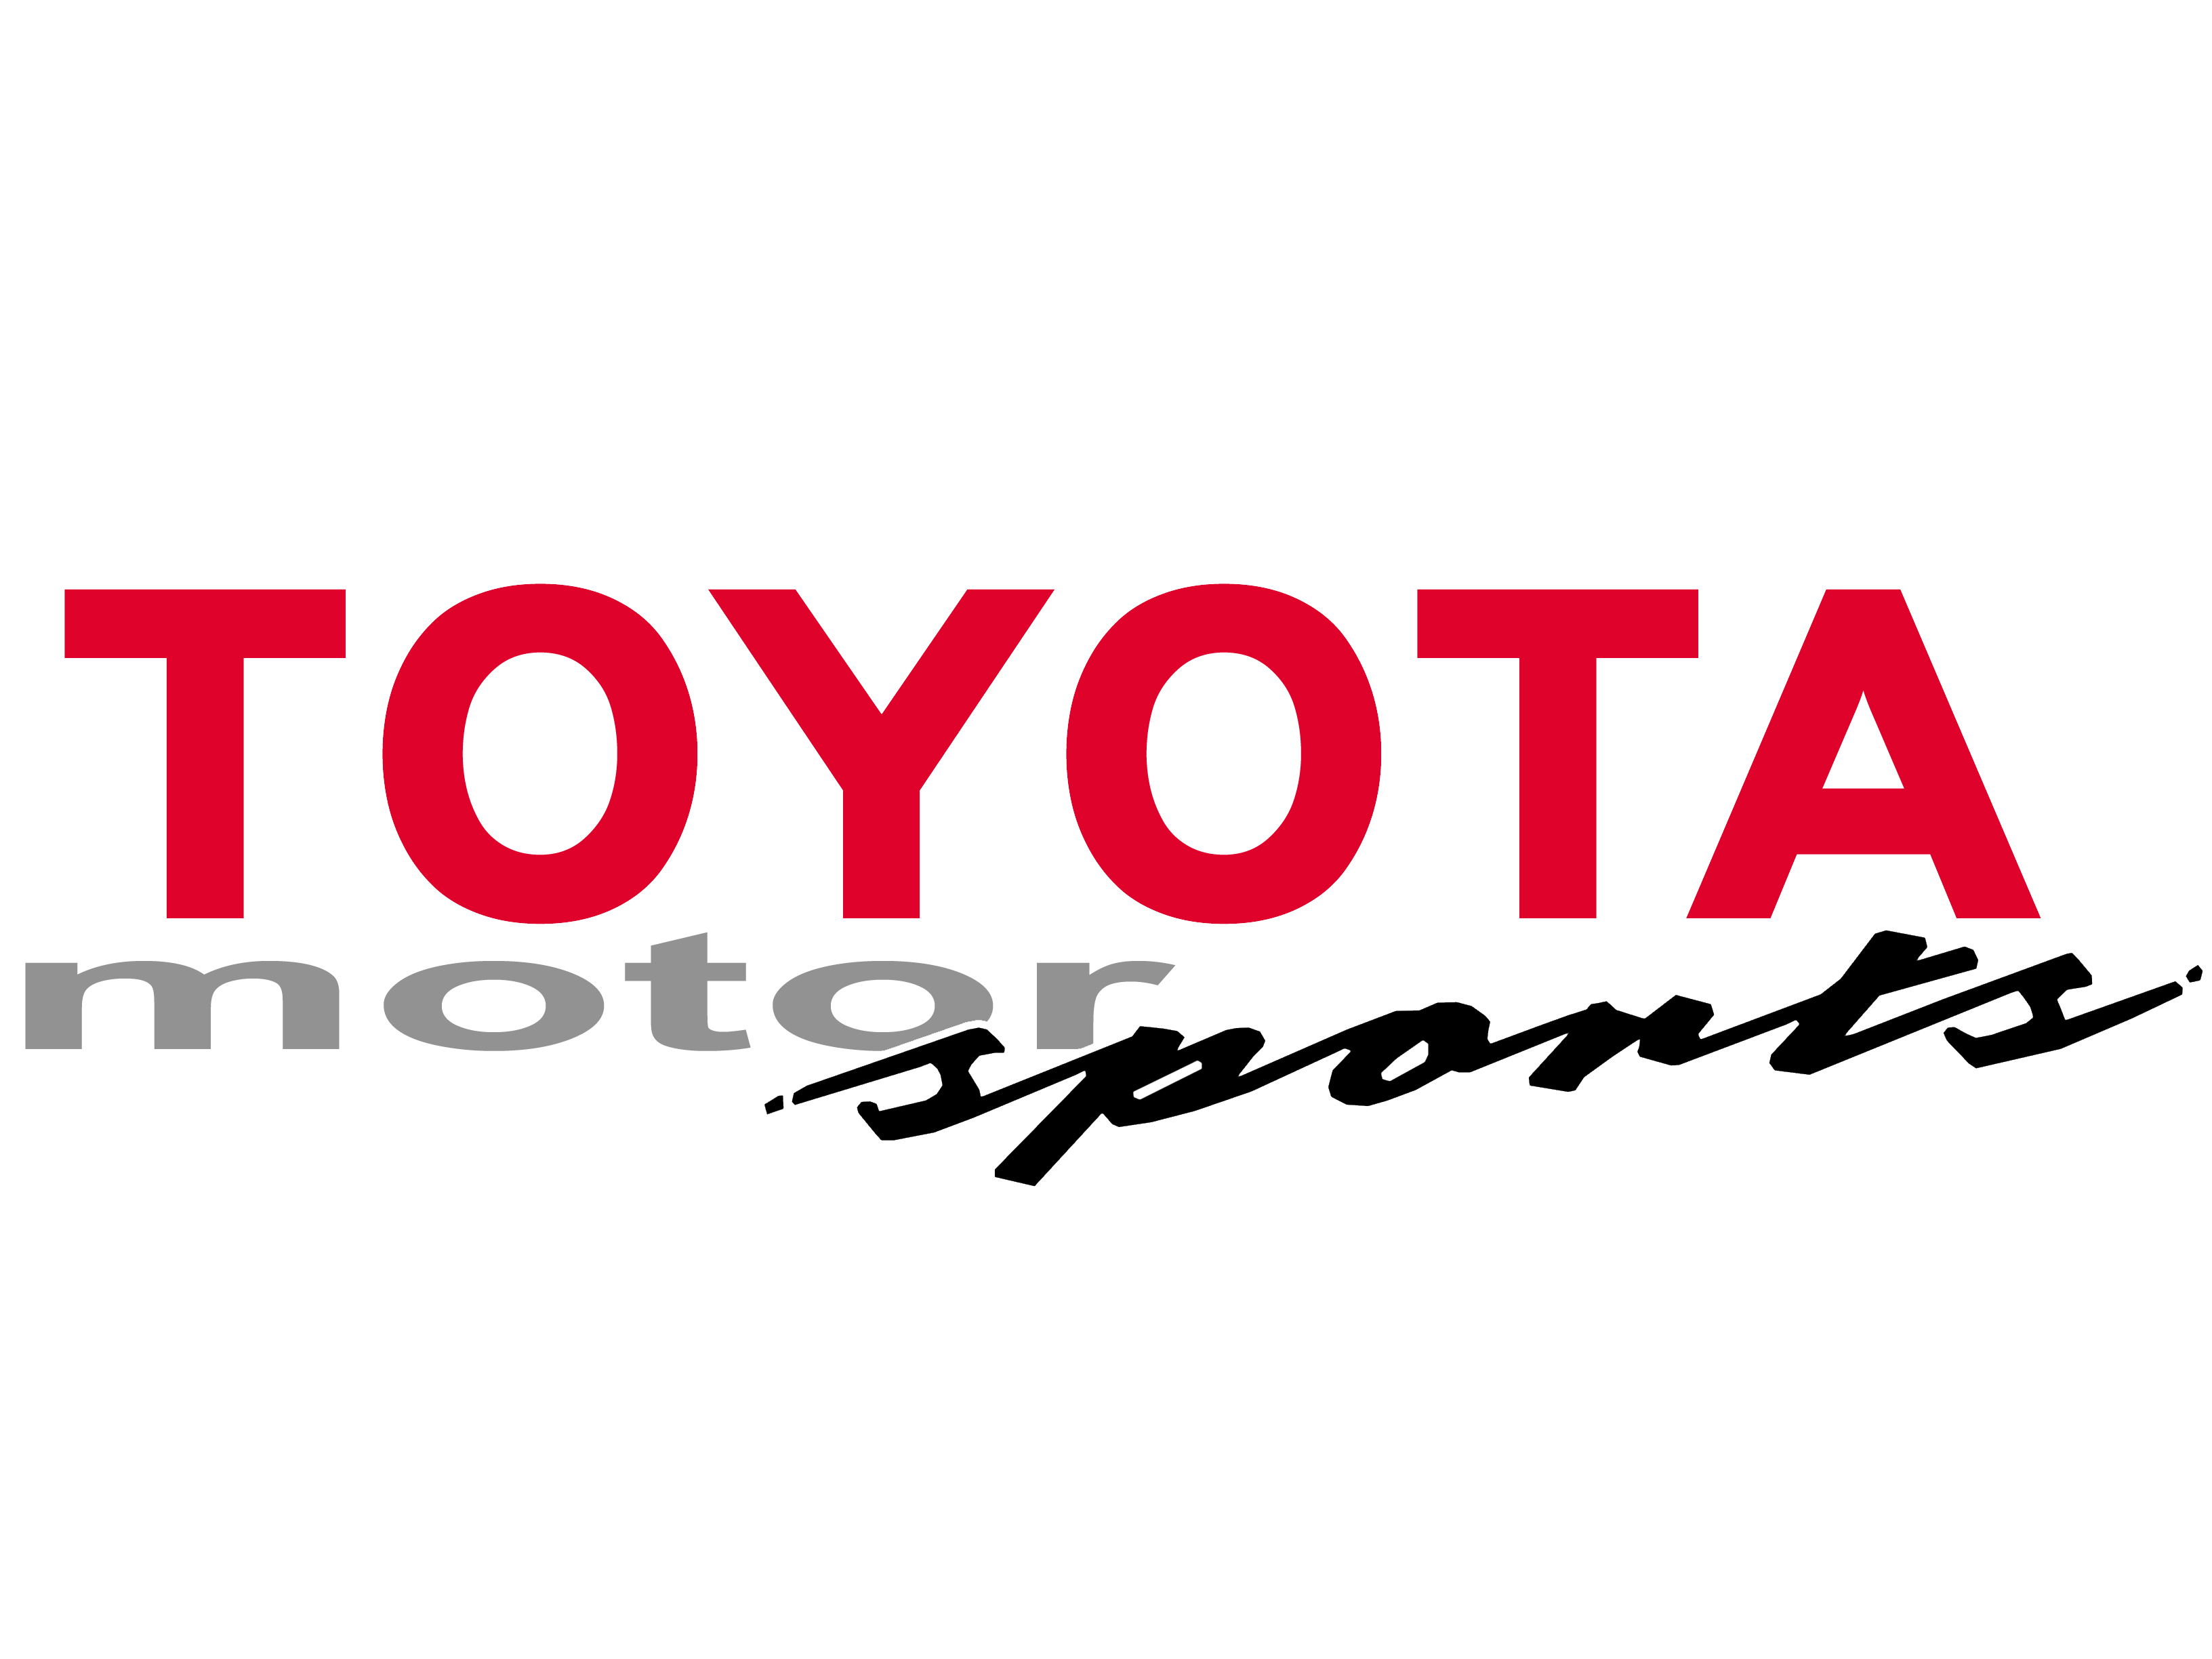 Toyota Motorsportsv1.jpg